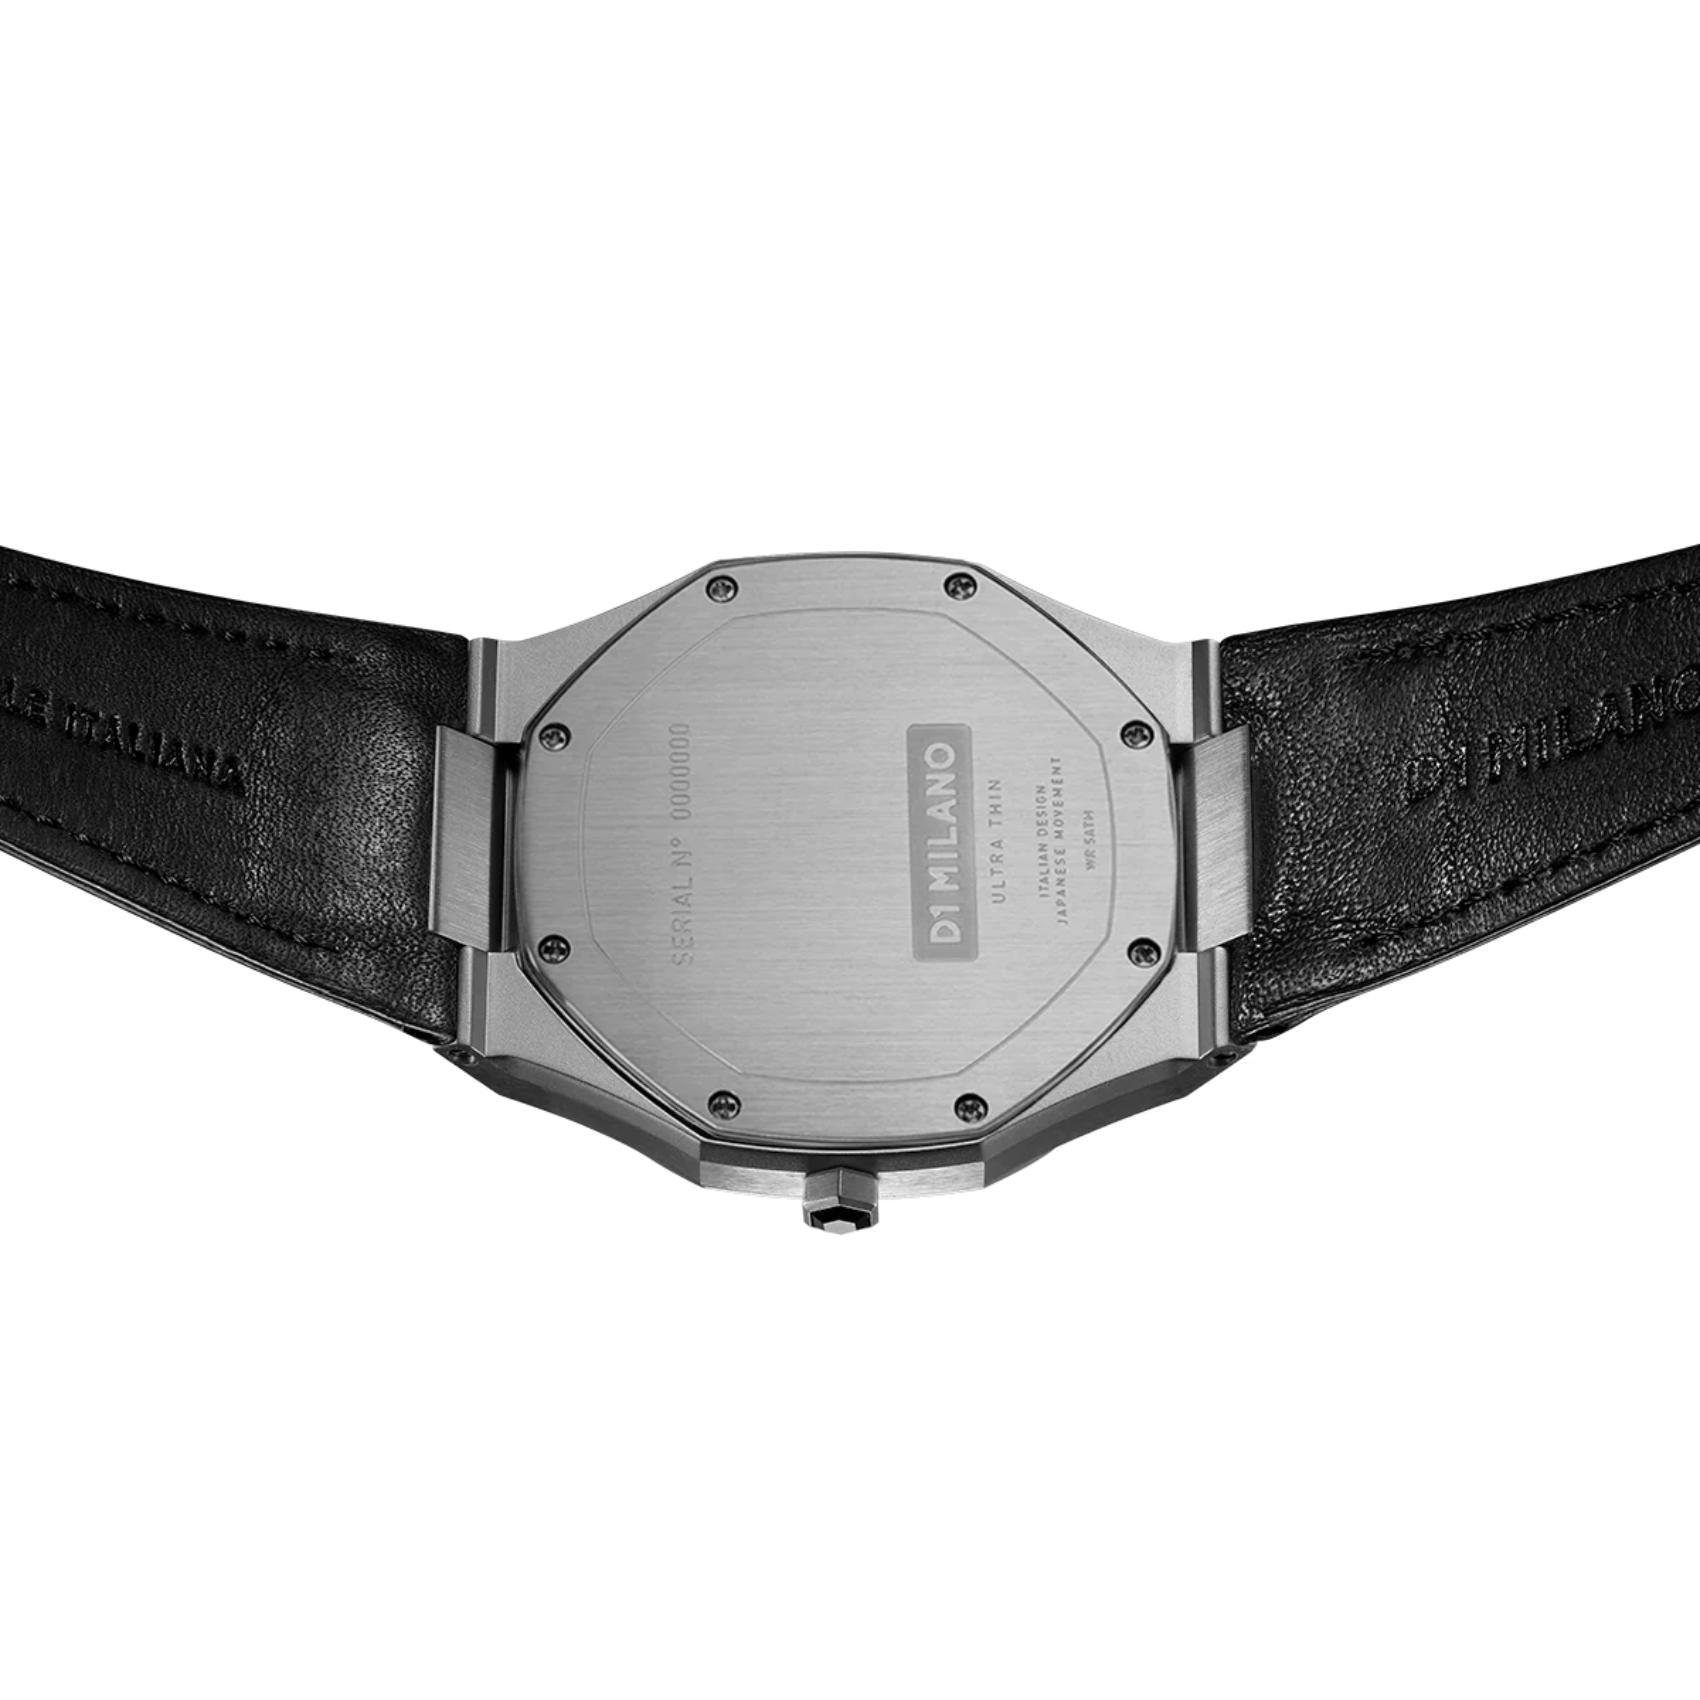 Ρολόι D1 Milano Ultra Thin D1-UTLJ02 με μαύρο δερμάτινο λουράκι, μαύρο καντράν και ασημένια κάσα διαμέτρου 40mm σε οκτάγωνο σχήμα.